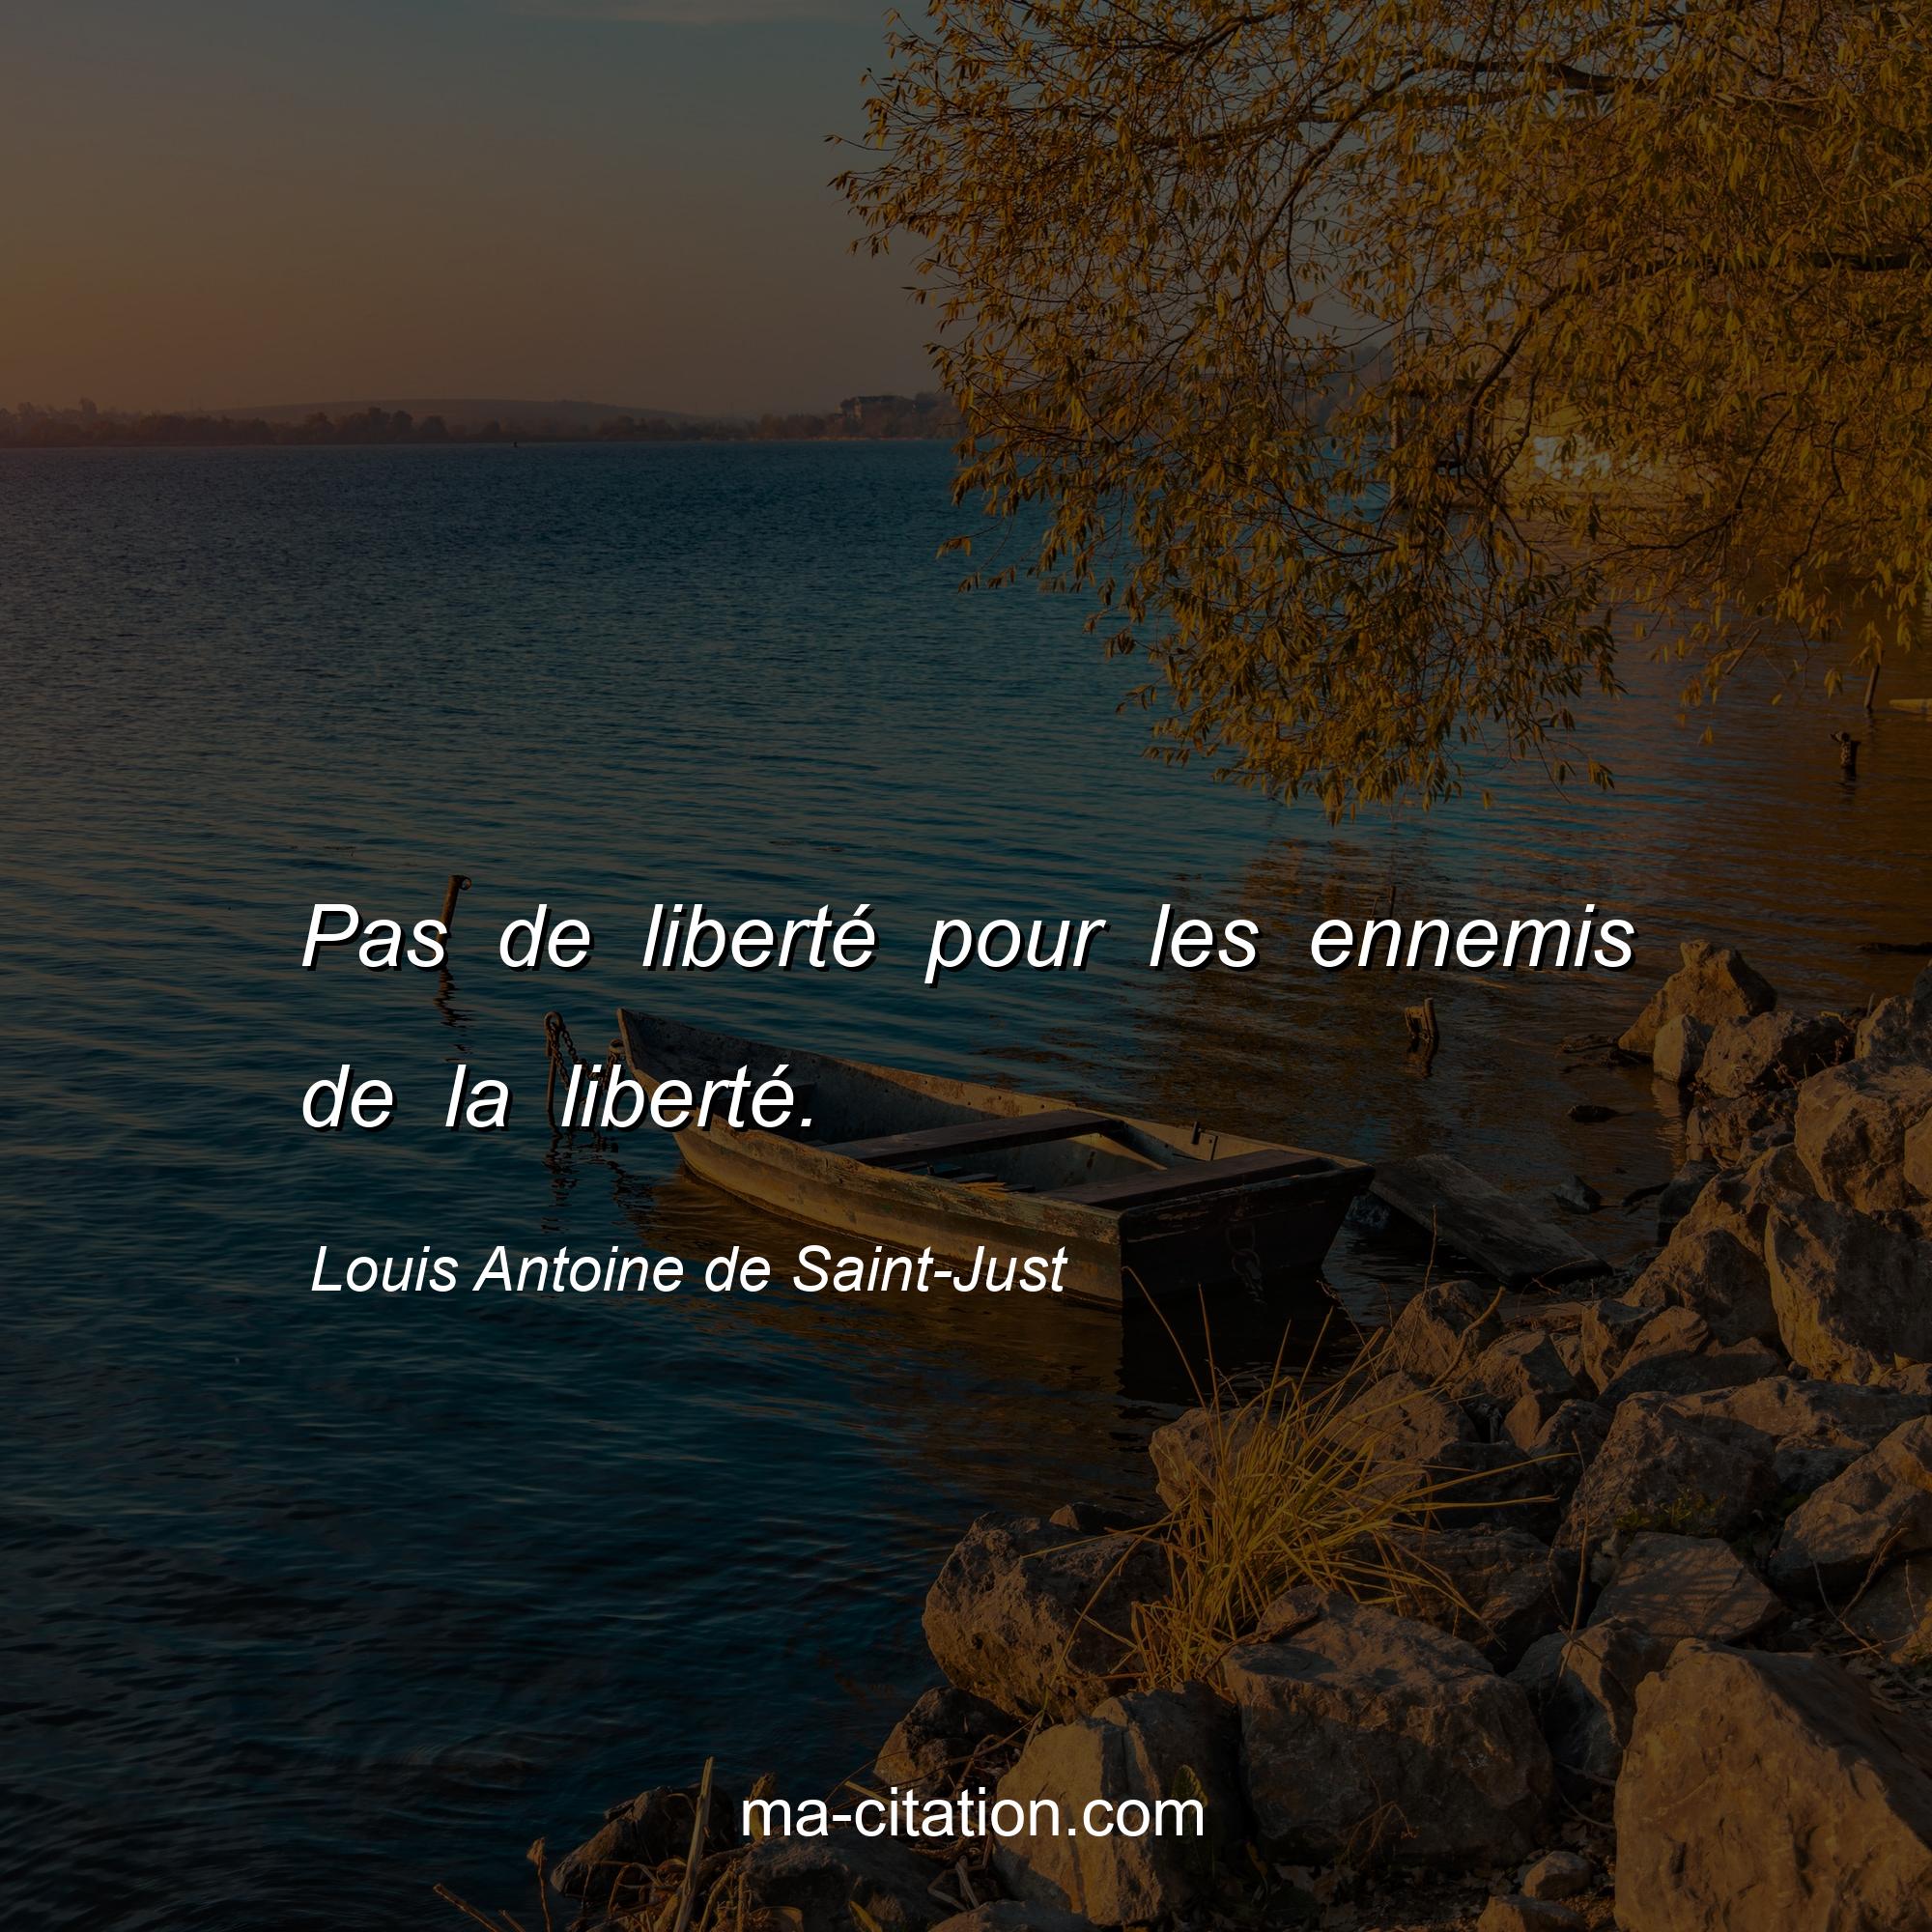 Louis Antoine de Saint-Just : Pas de liberté pour les ennemis de la liberté.